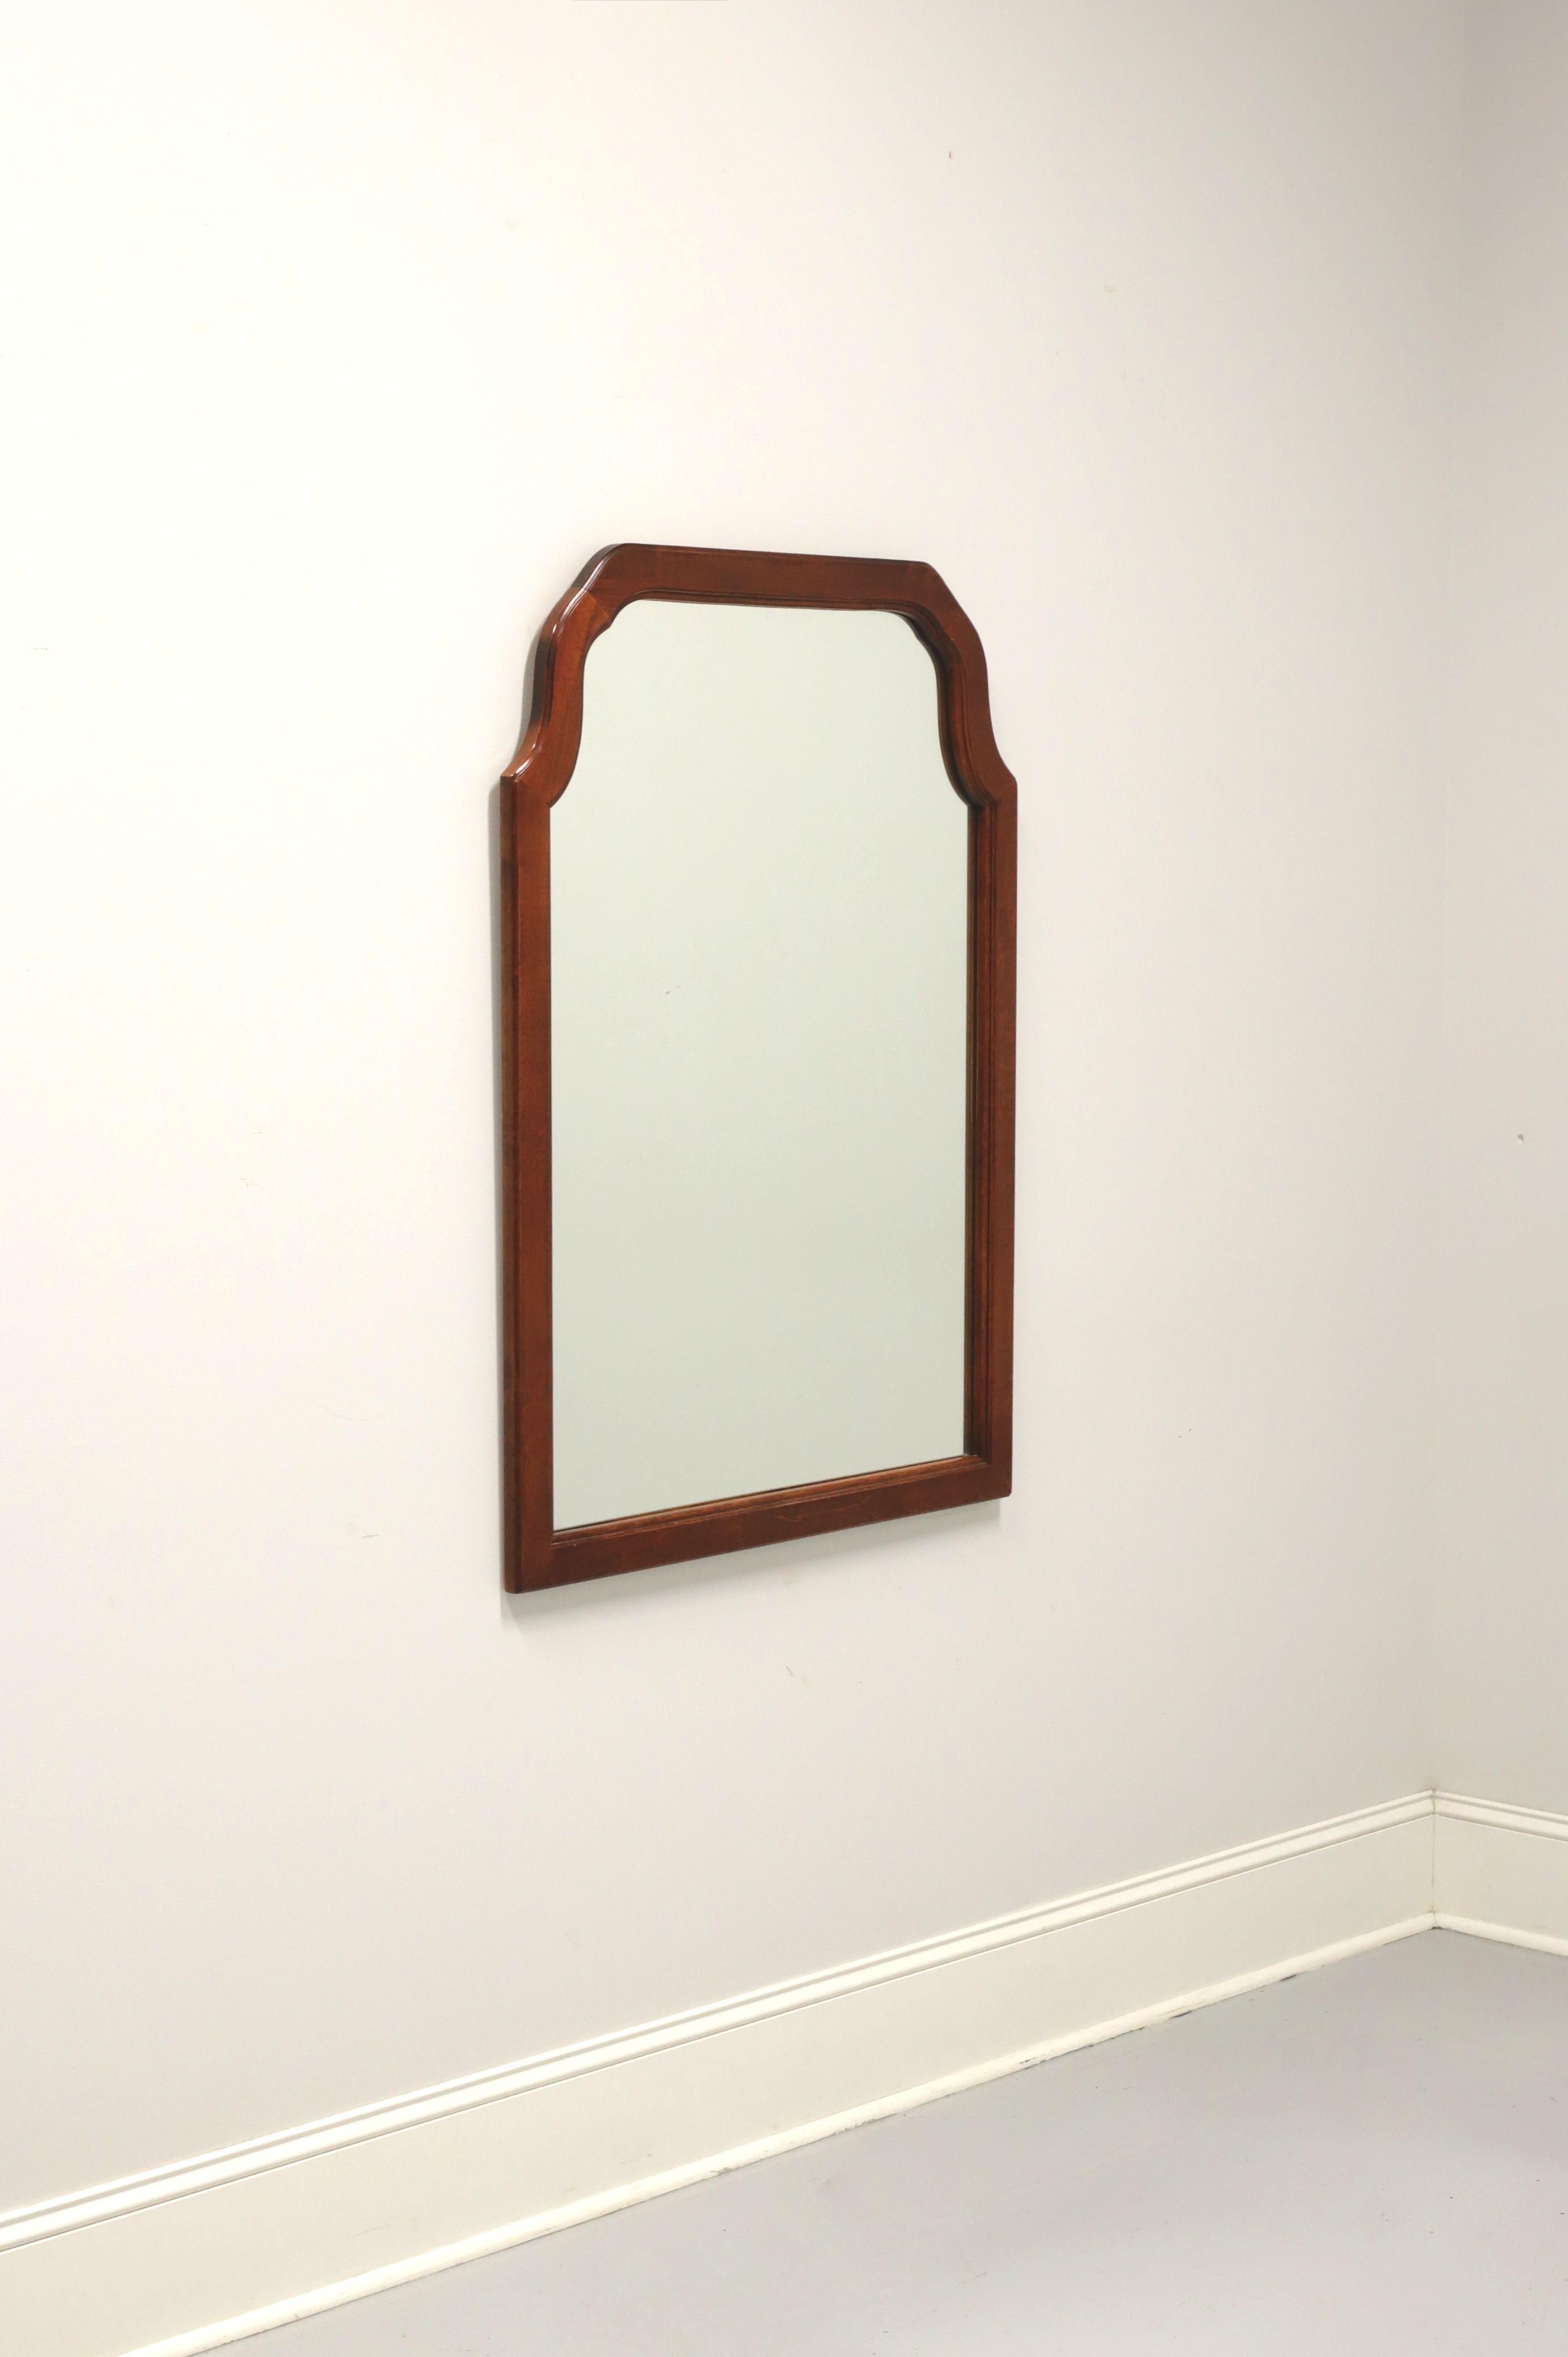 Ein Wandspiegel im traditionellen Stil, ohne Markenzeichen, ähnliche Qualität wie Craftique oder Henredon. Spiegelglas und Kirschholzrahmen mit flachem Bogen. Hergestellt in den USA, Mitte des 20. Jahrhunderts.

Maße: 31.5 B 1 T 43,5 H, Wiegt